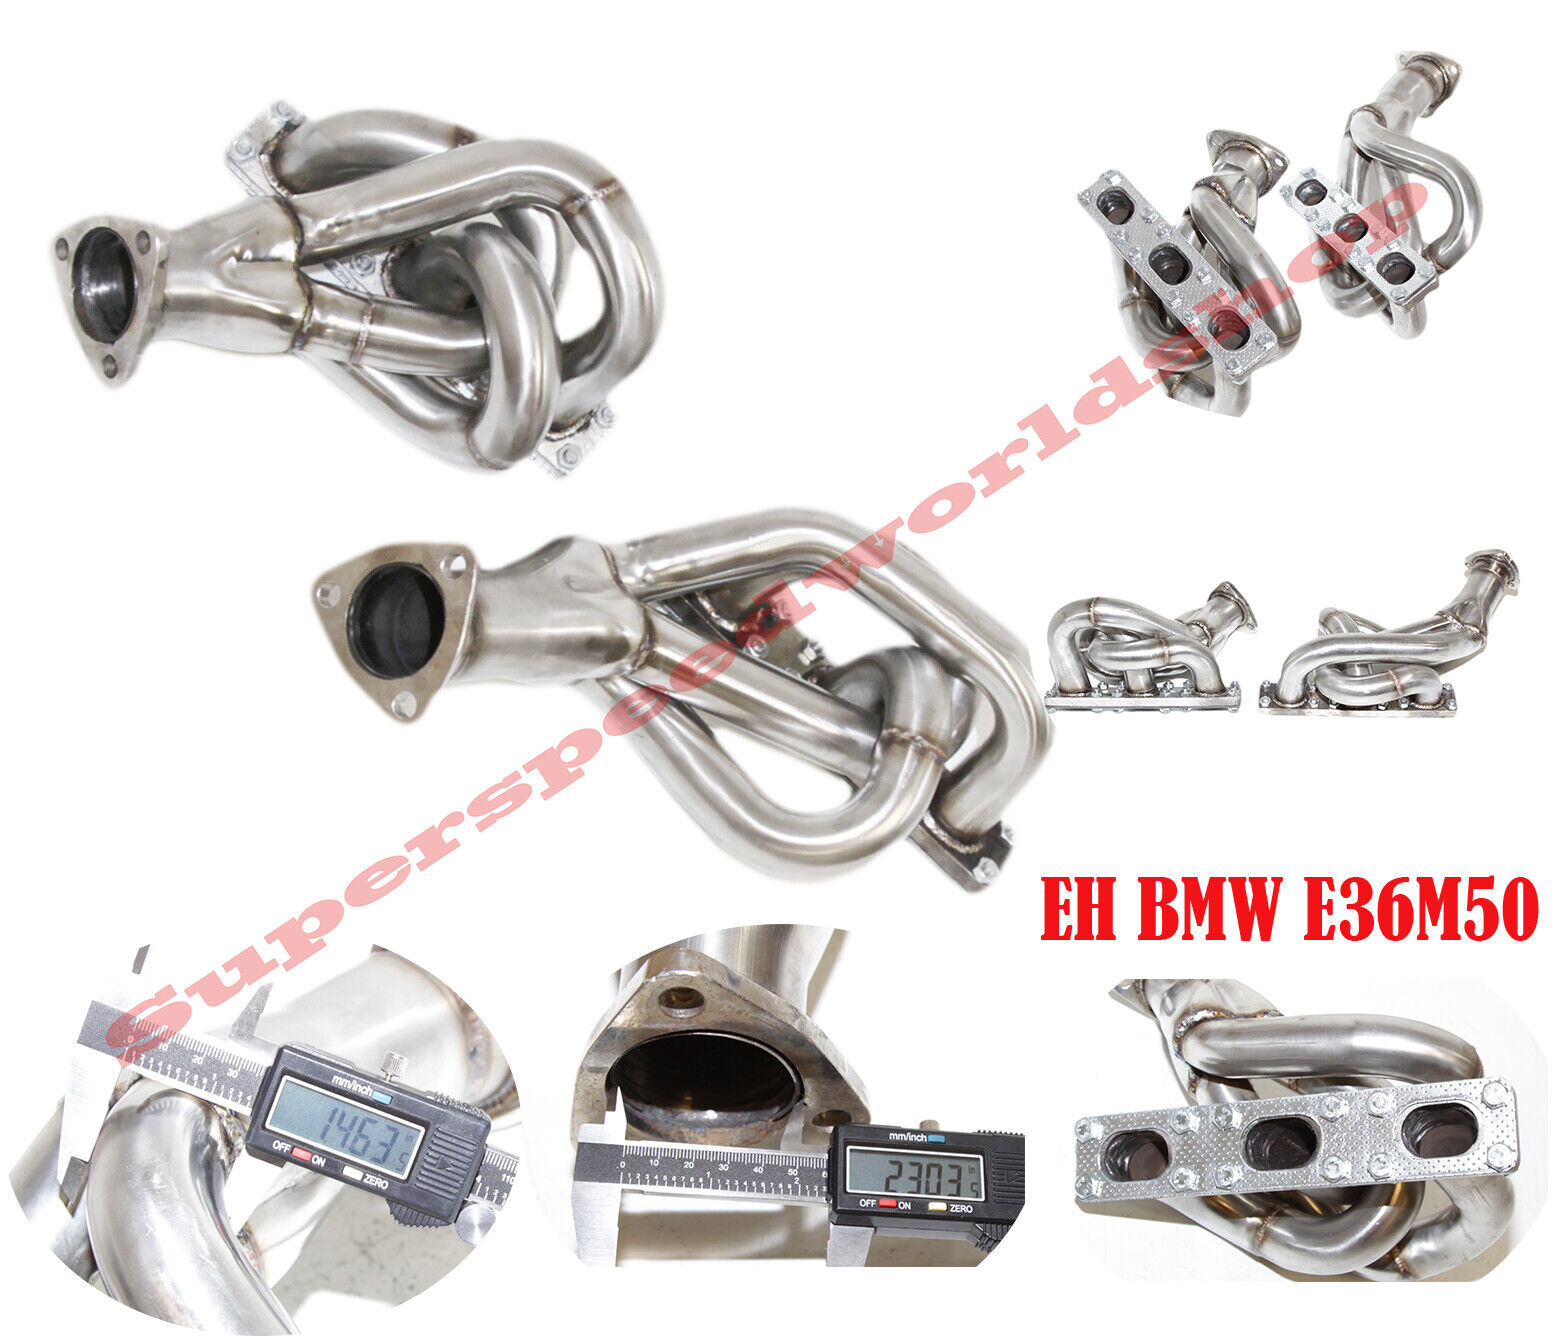 Stainless Steel Header fit BMW 92-95 320i/325i 96-99 328i 98-99 323i 